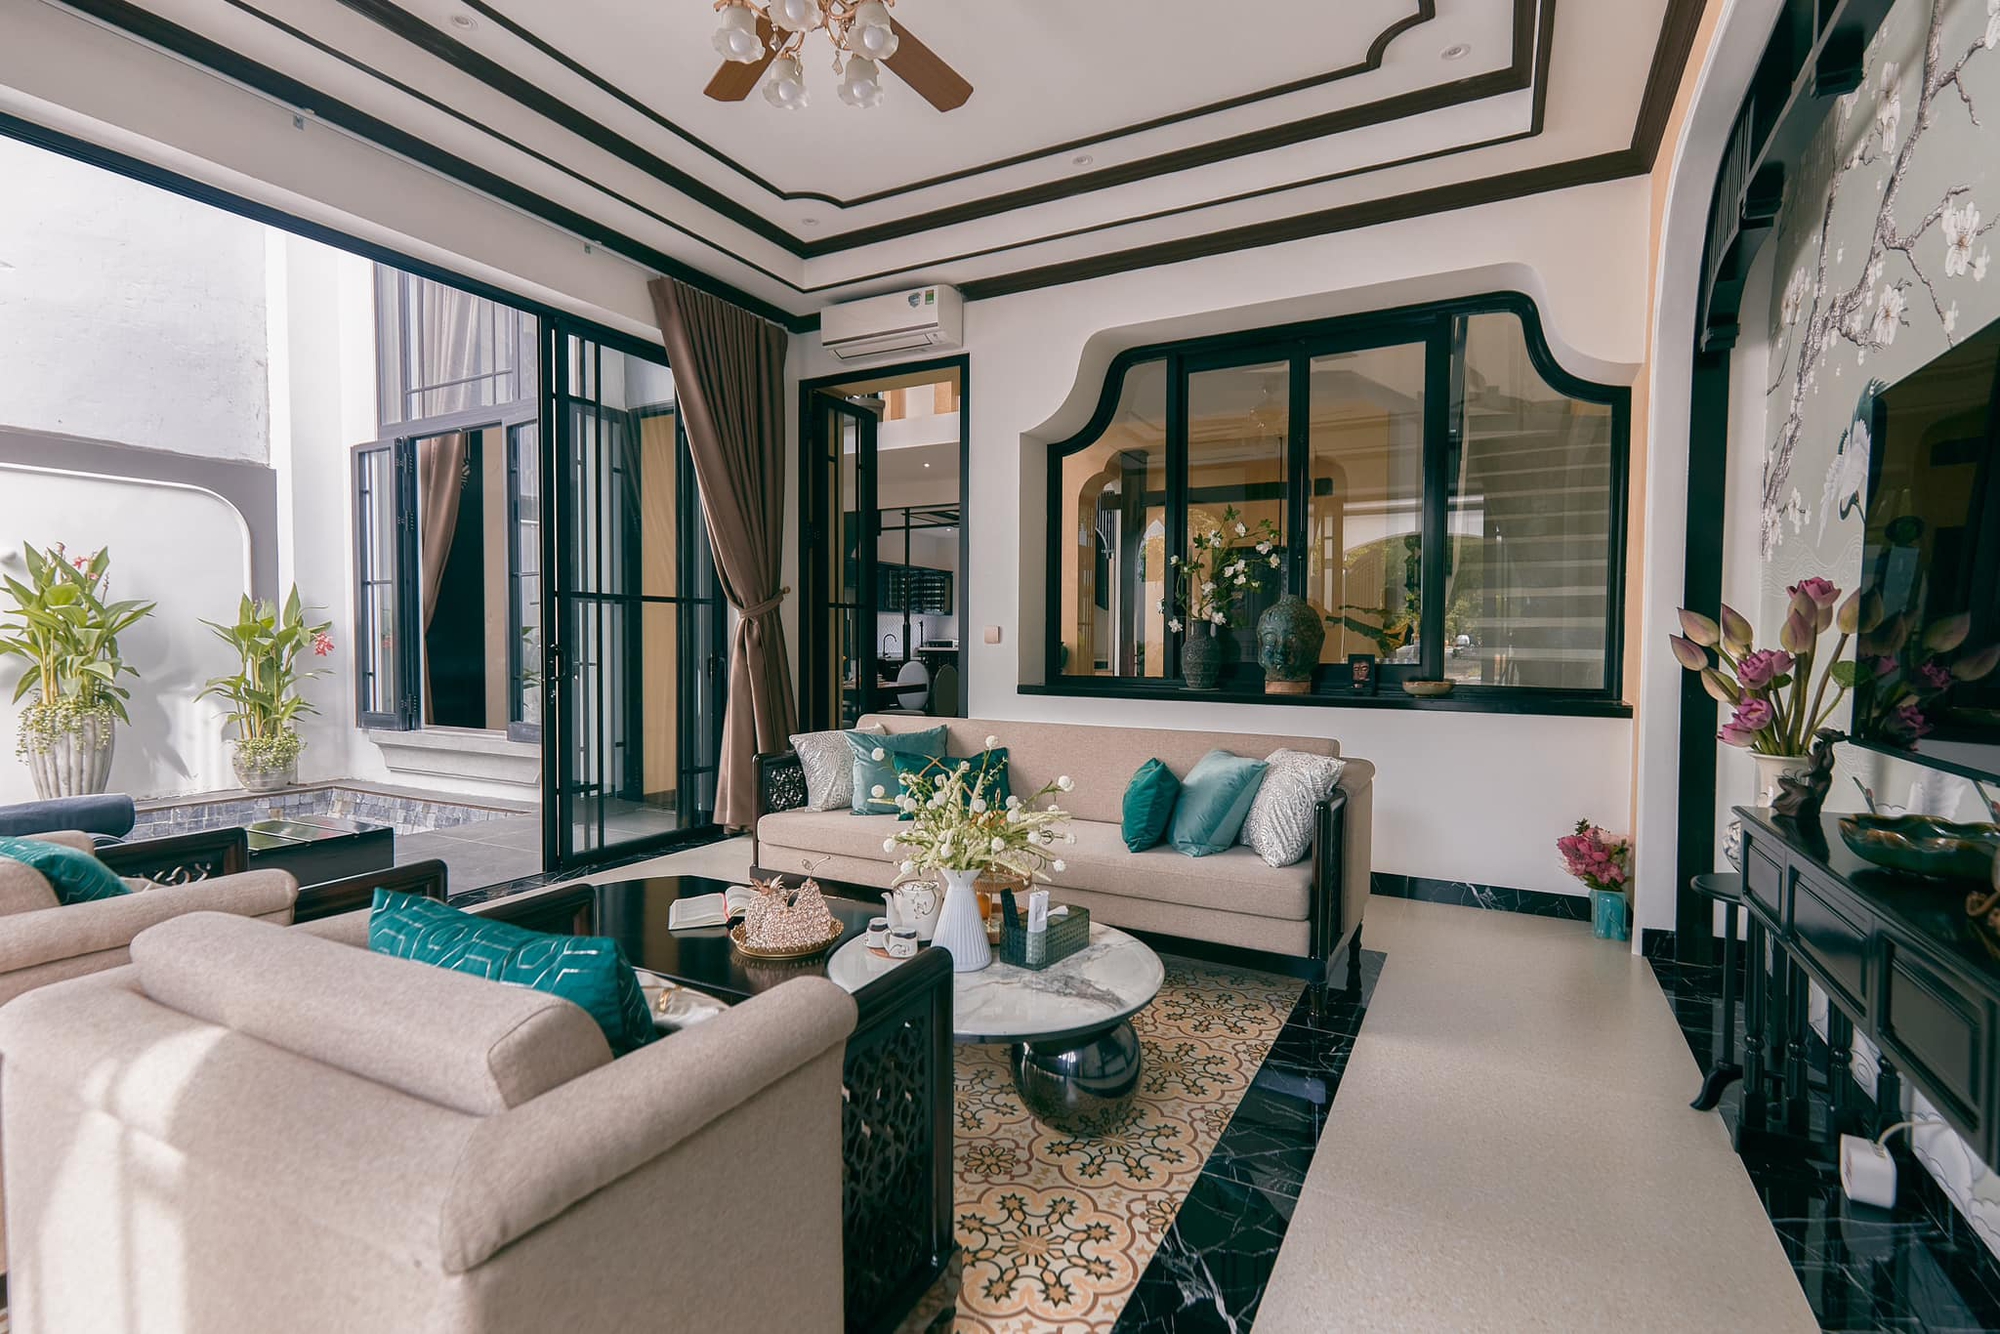 Cặp vợ chồng trẻ chi 8 tỷ xây căn villa phong cách Indochina đẹp mê ly  - Ảnh 2.